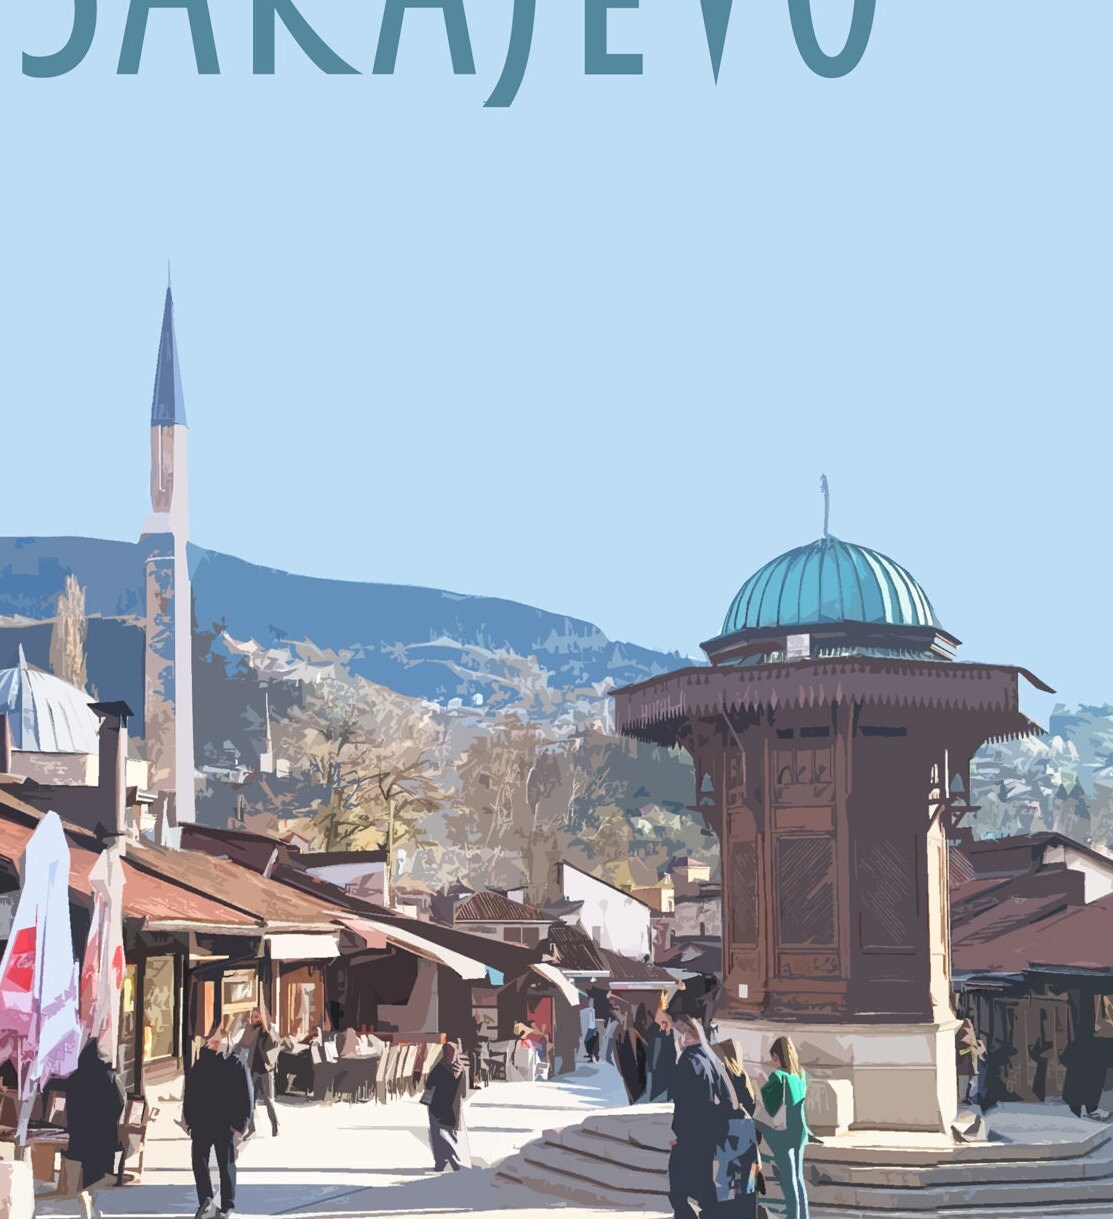 Sarajevo Travel Poster